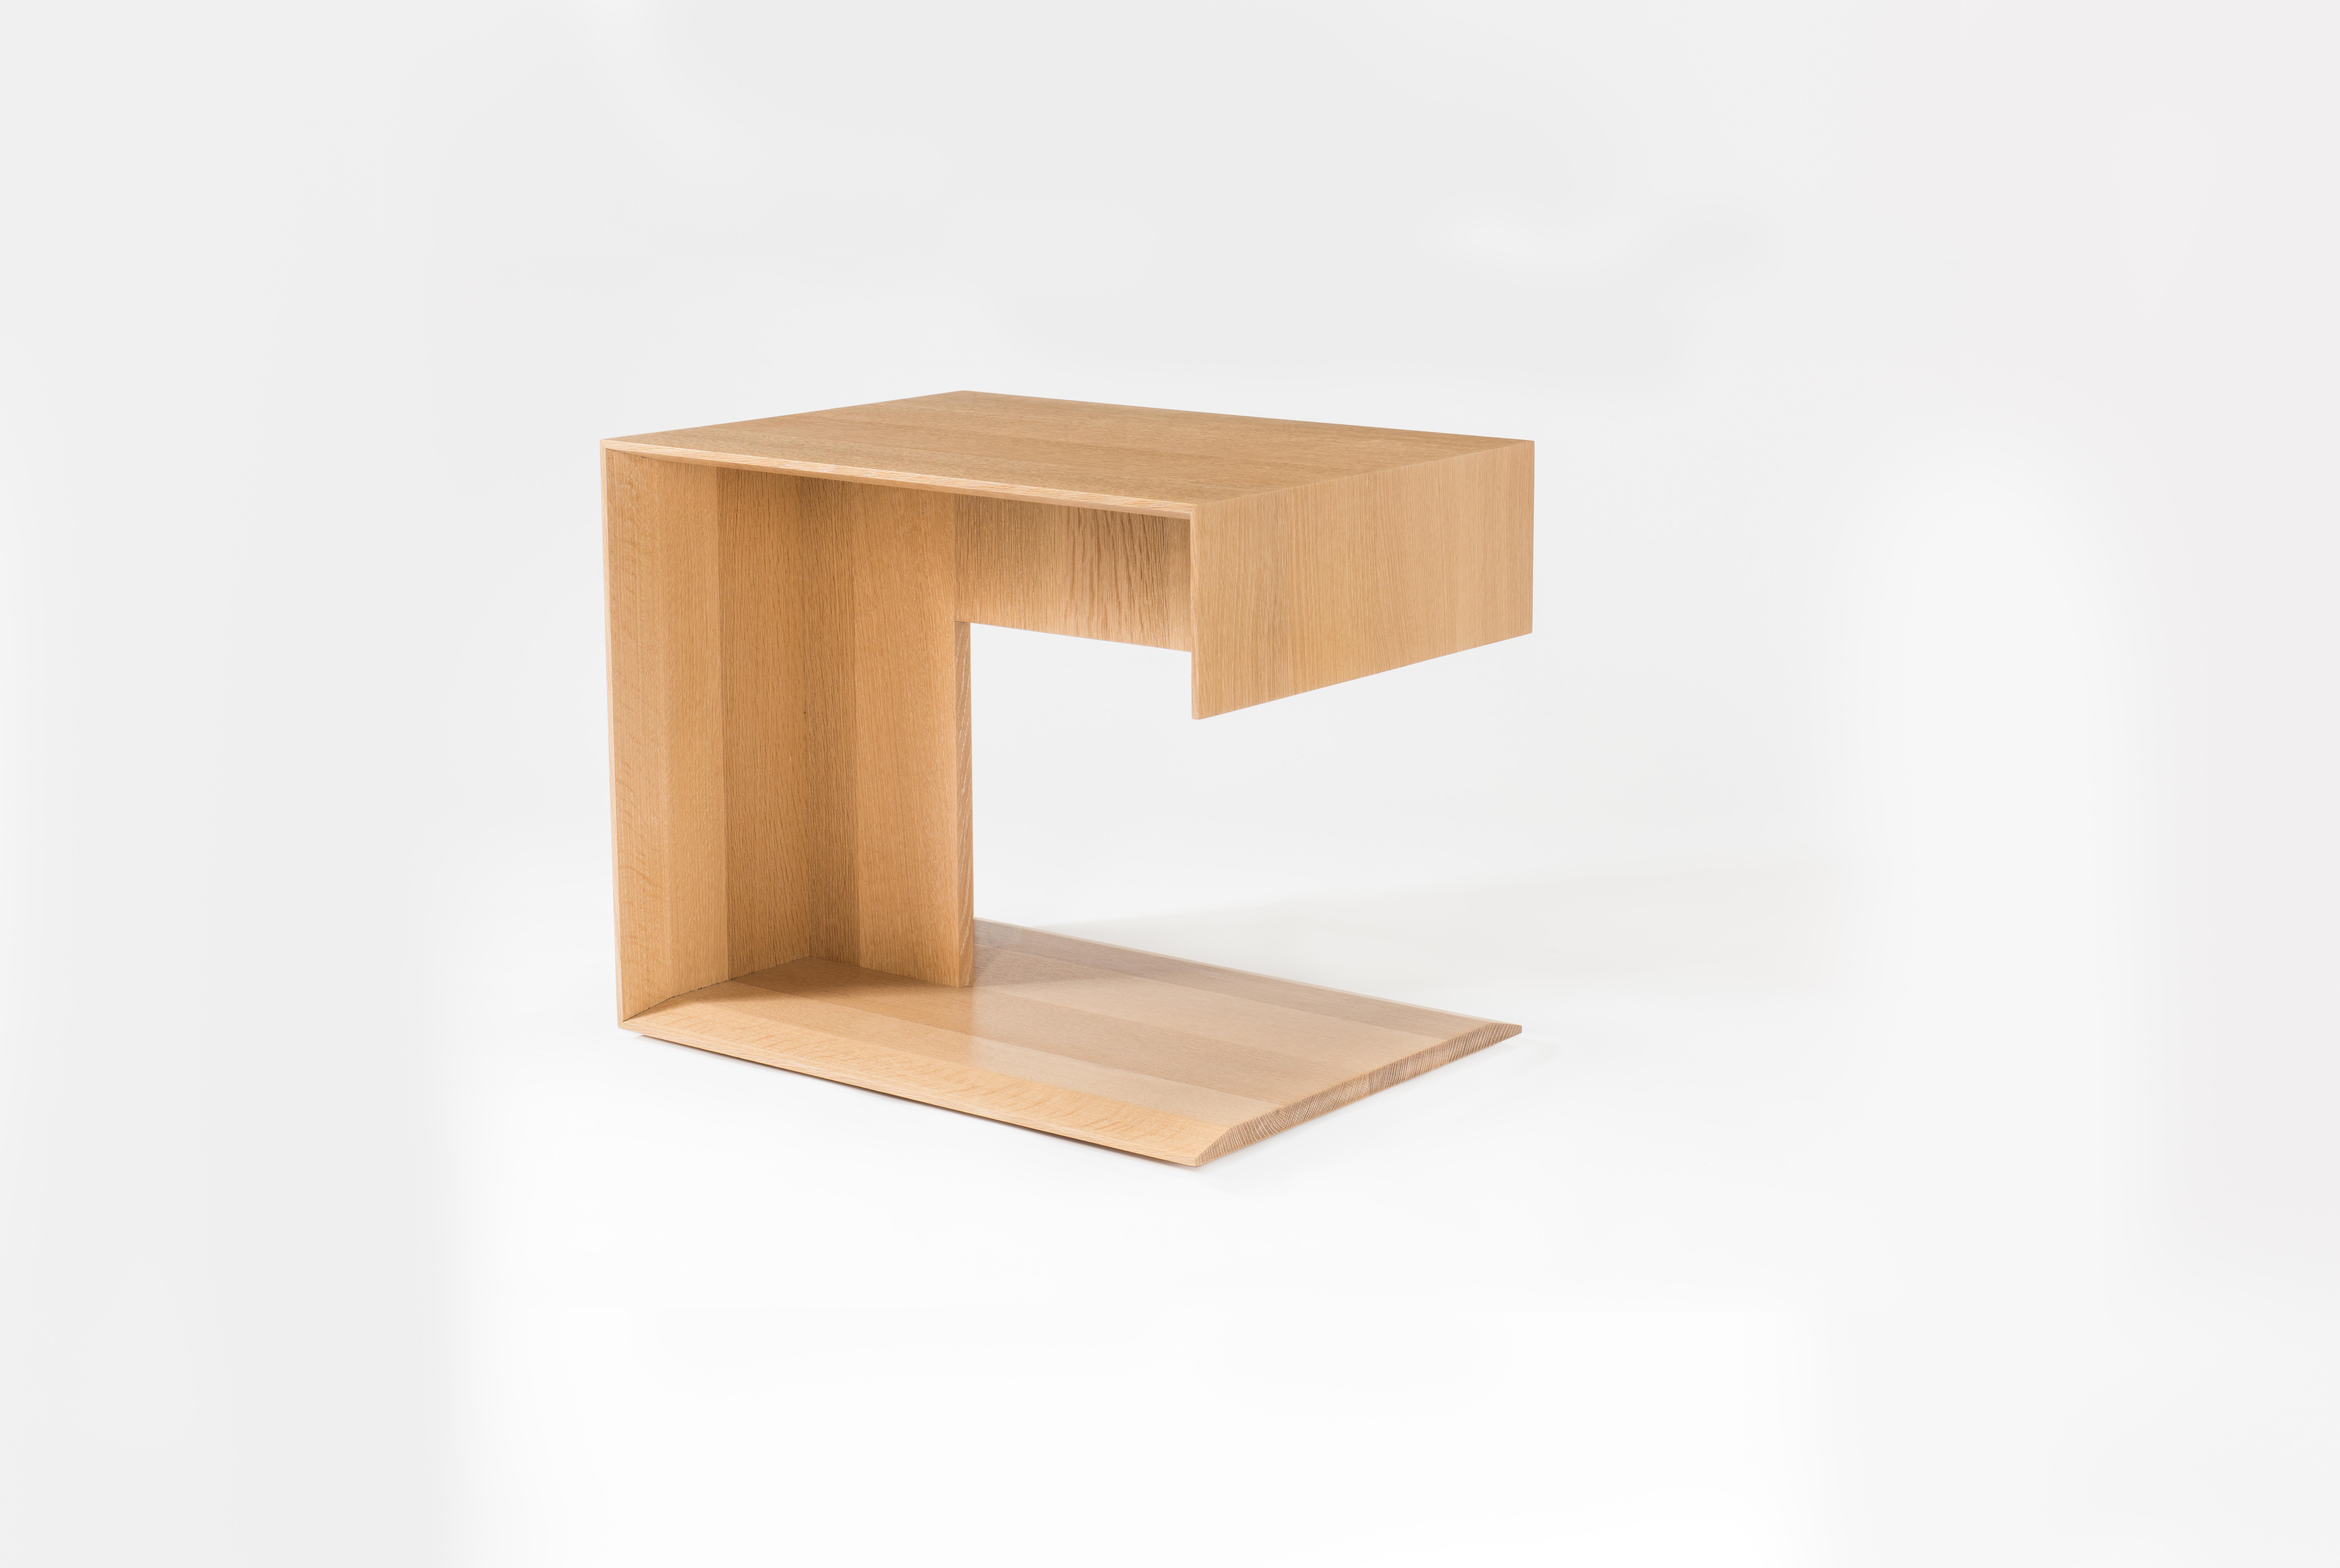 Cette version de notre table d'appoint en bois moderne s'appelle la table 